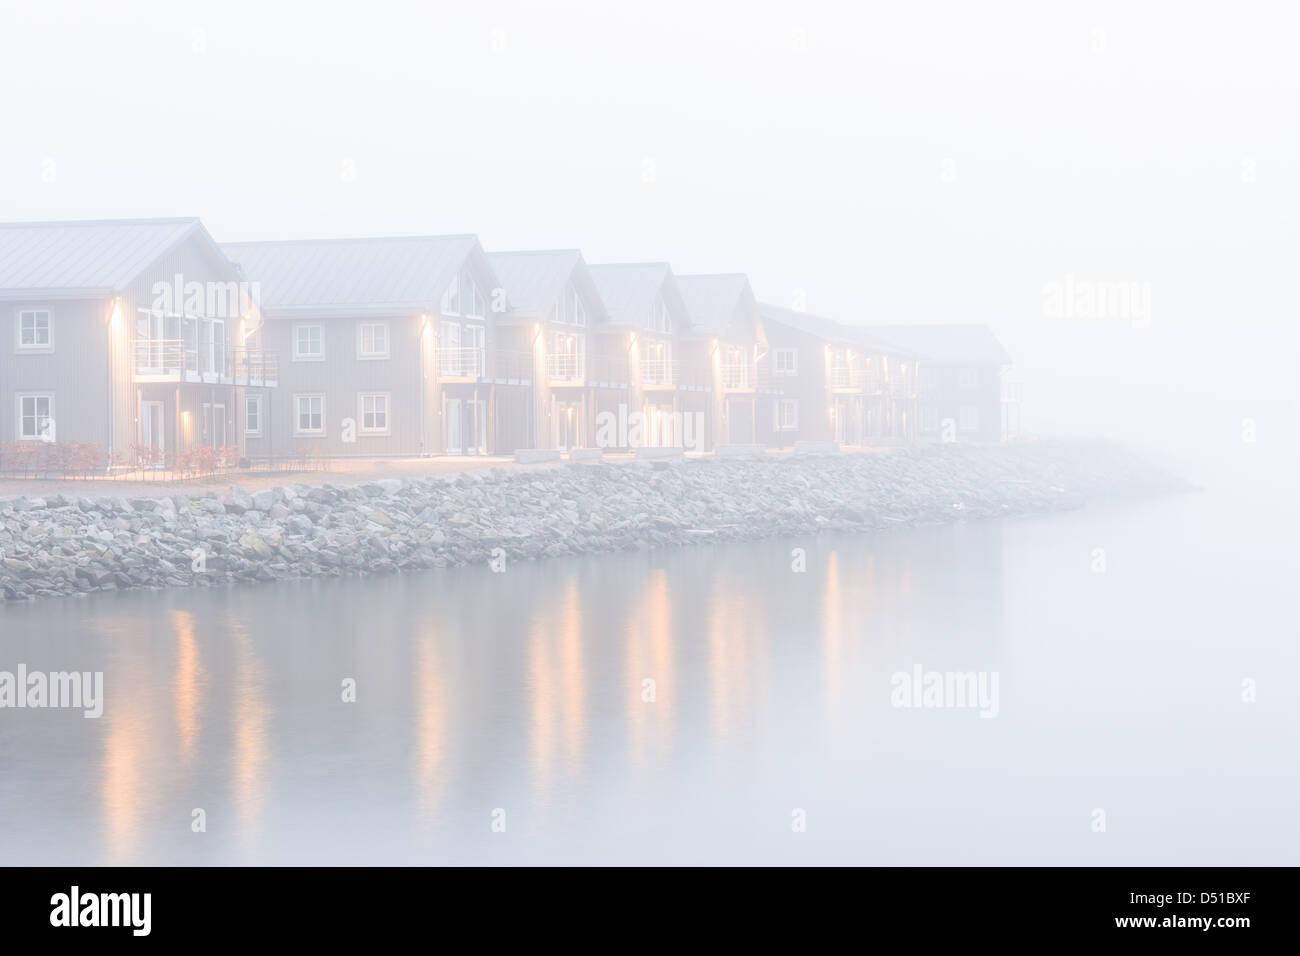 Morning mist over lakeside buildings, Nya Varvet, Gothenburg, Sweden, Europe Stock Photo